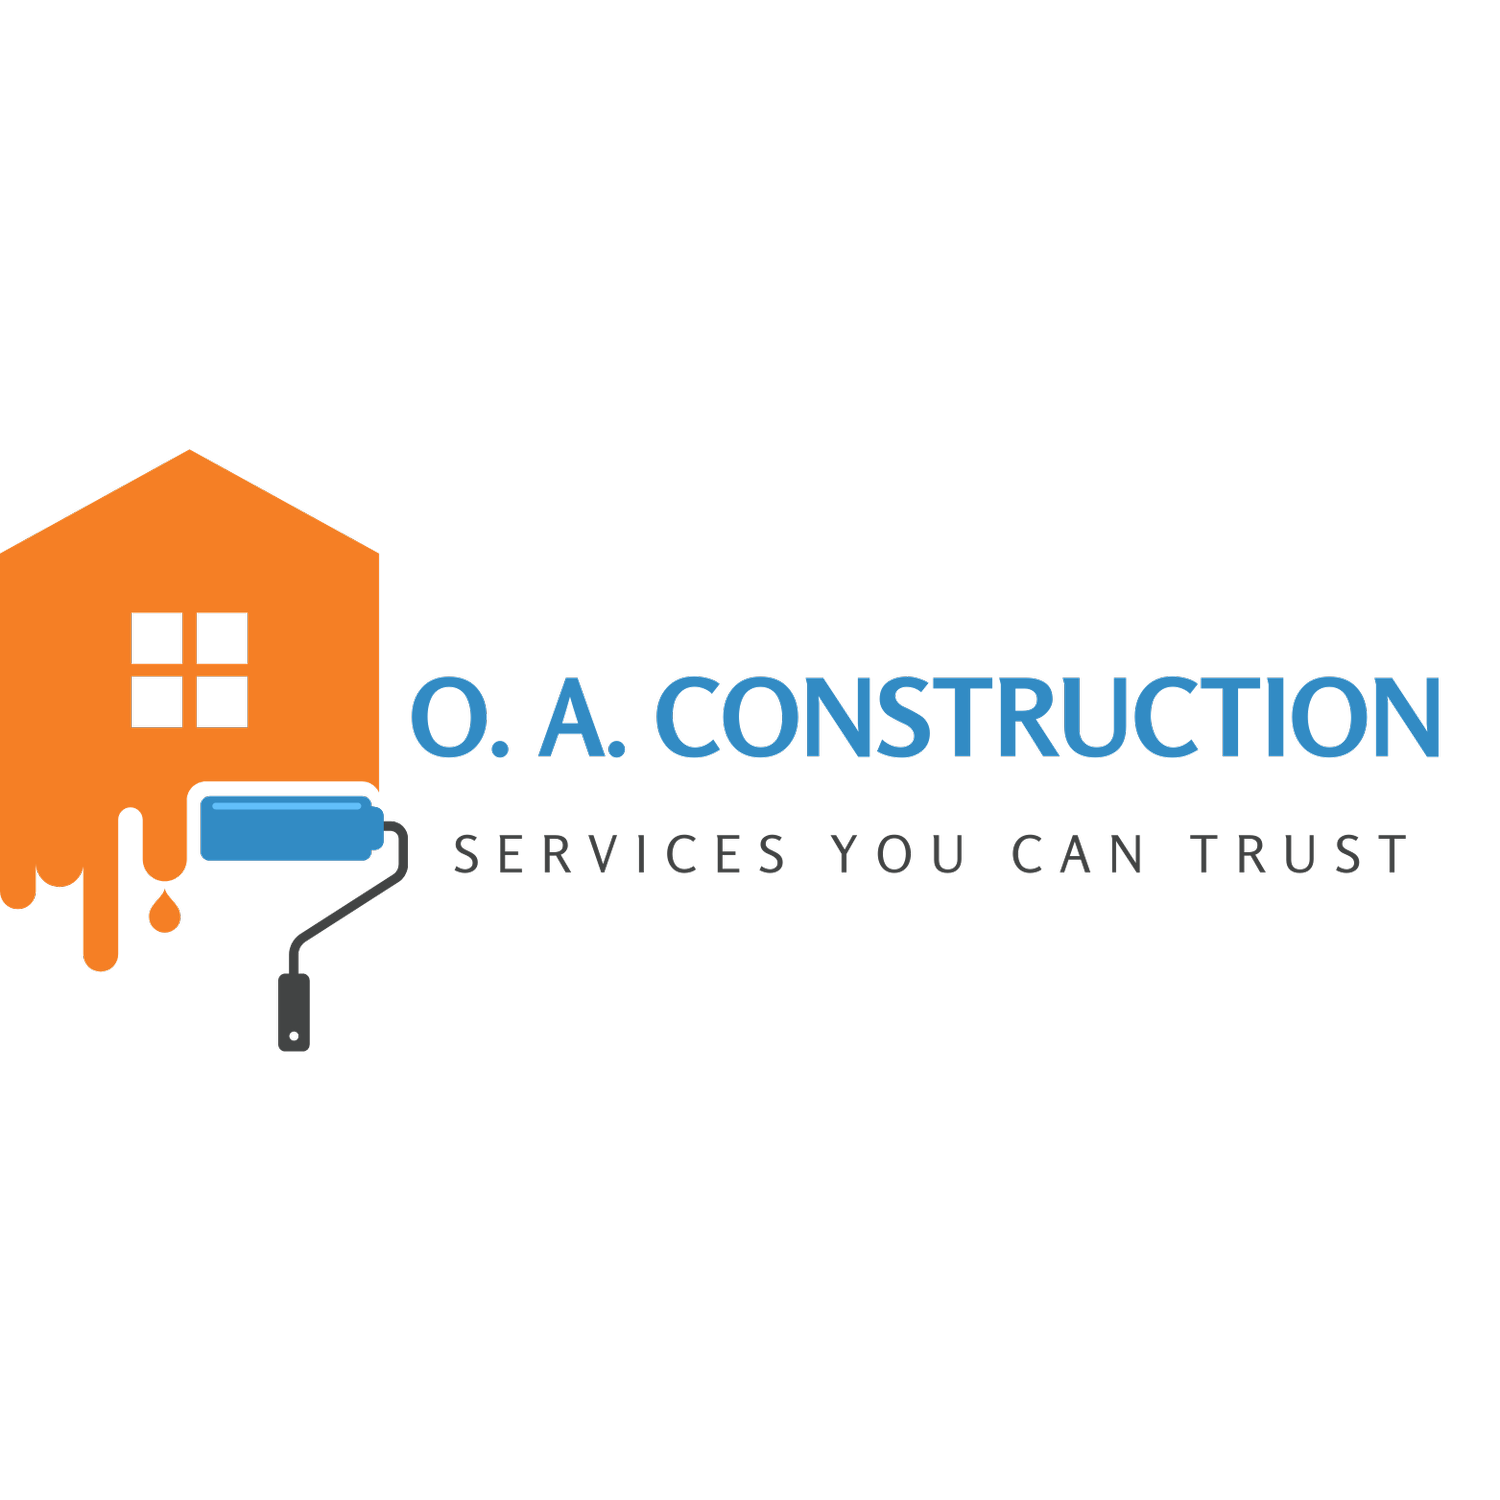 O. A. Construction